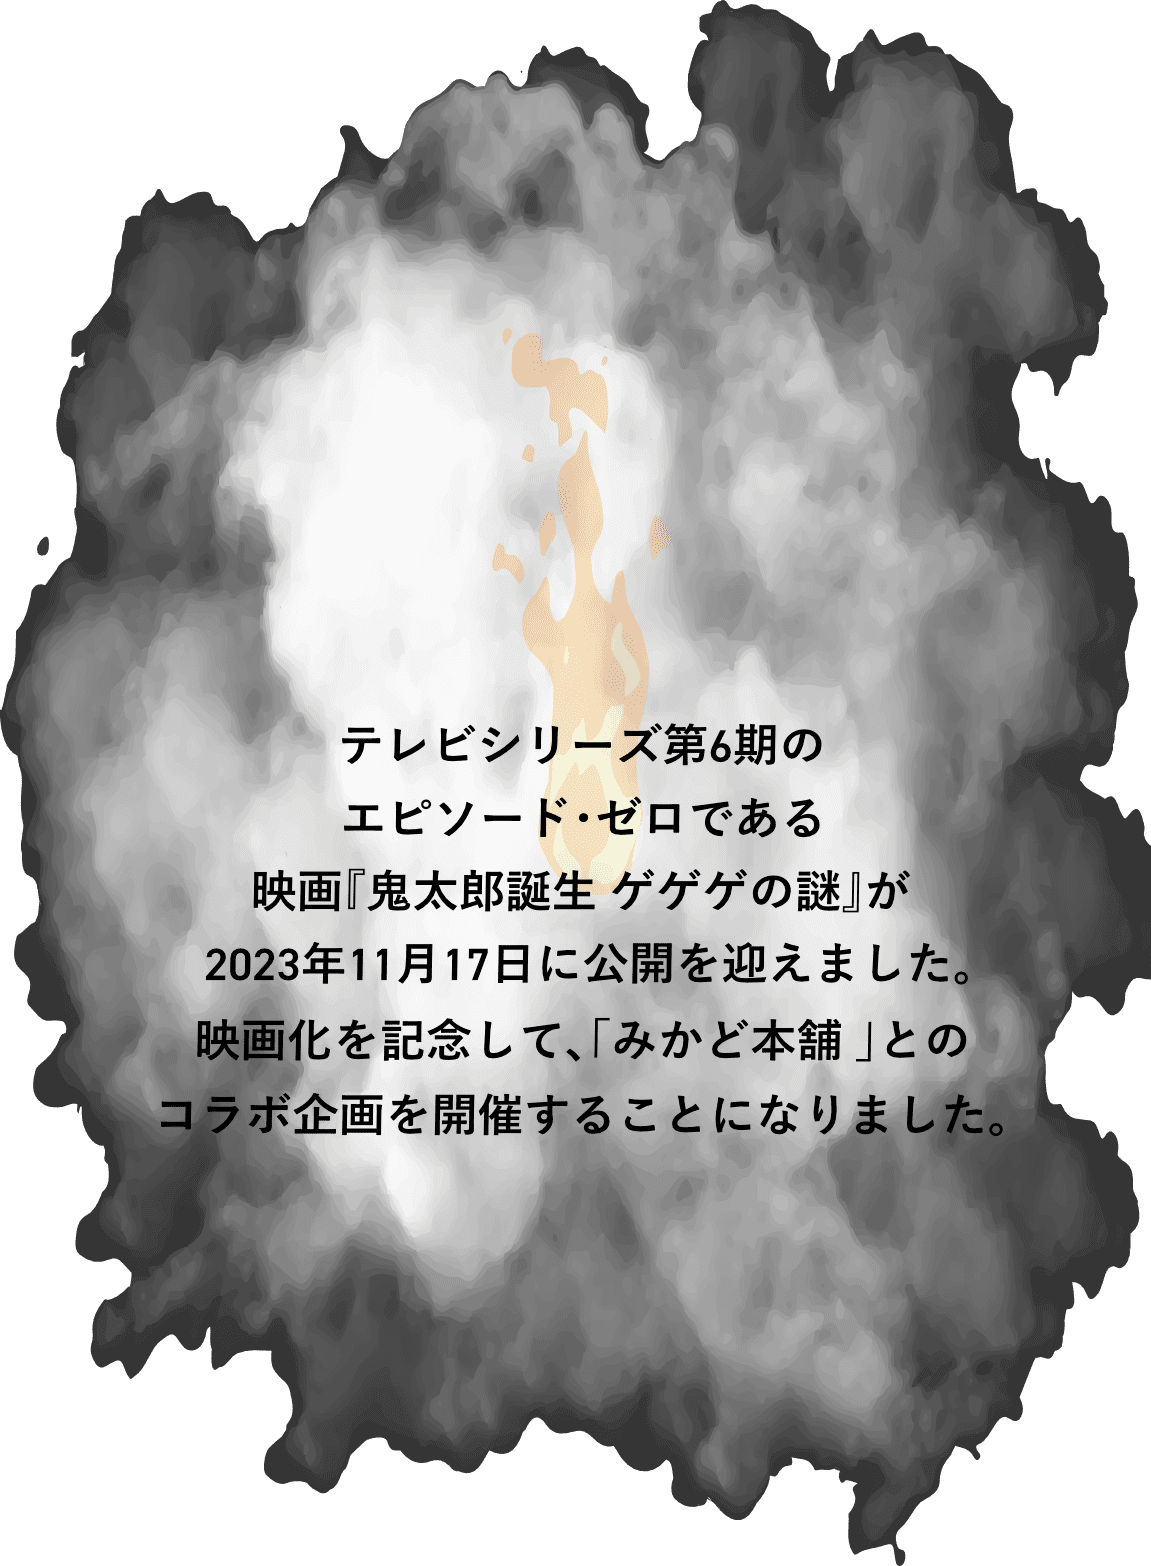 テレビシリーズ第6期のエピソード・ゼロである映画「鬼太郎誕生 ゲゲゲの謎」が2023年11月17日に公開を迎えます。映画化を記念して、「みかど本舗」とのコラボ企画を開催することになりました。